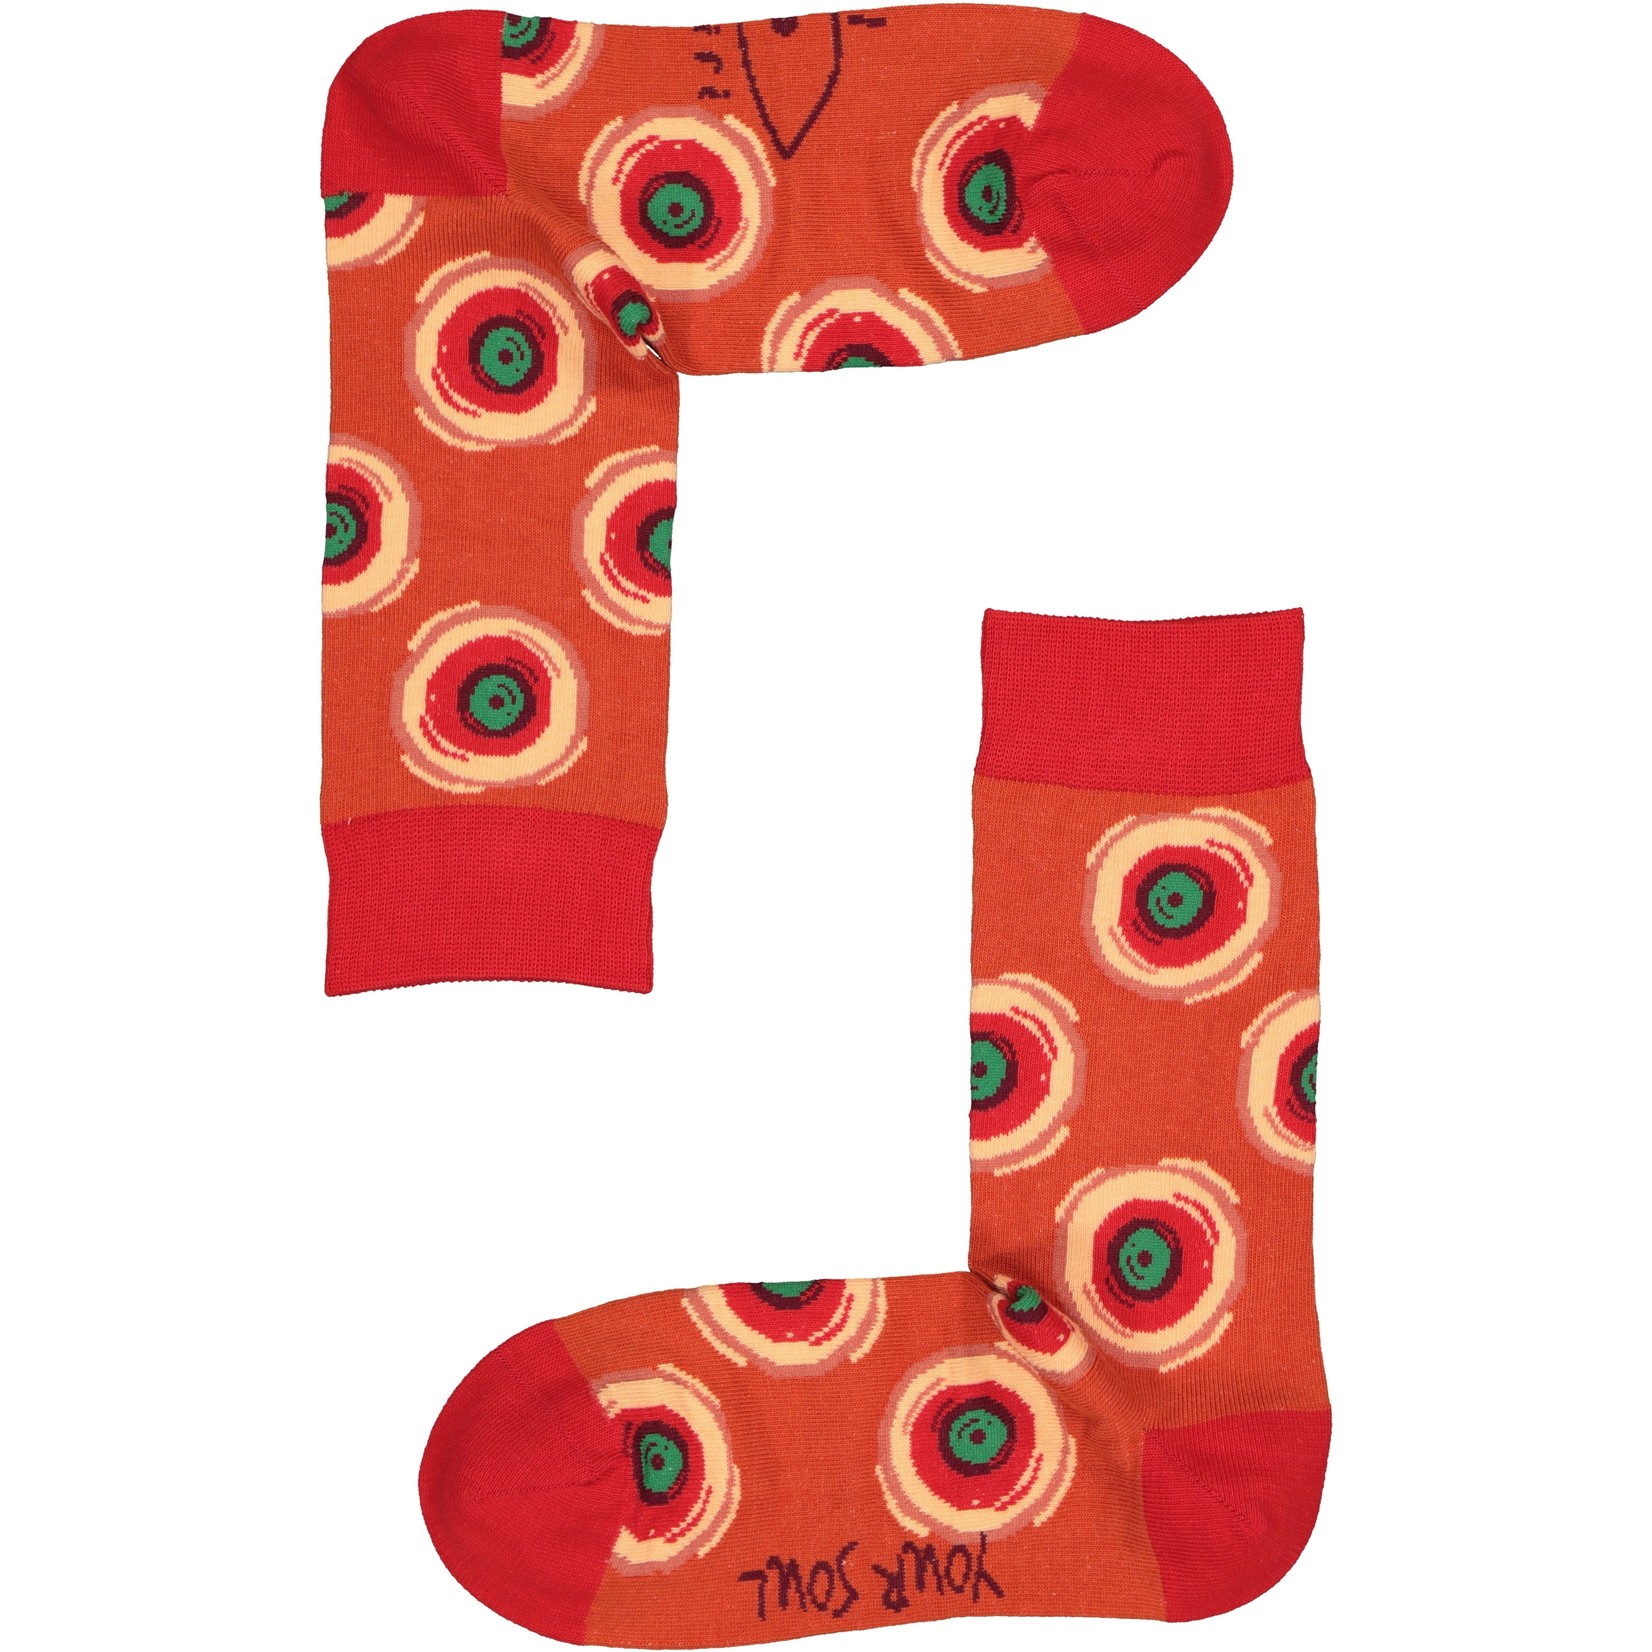 Spiri Spiri Socks The All Seeing Eye Gift Box (3-pack)